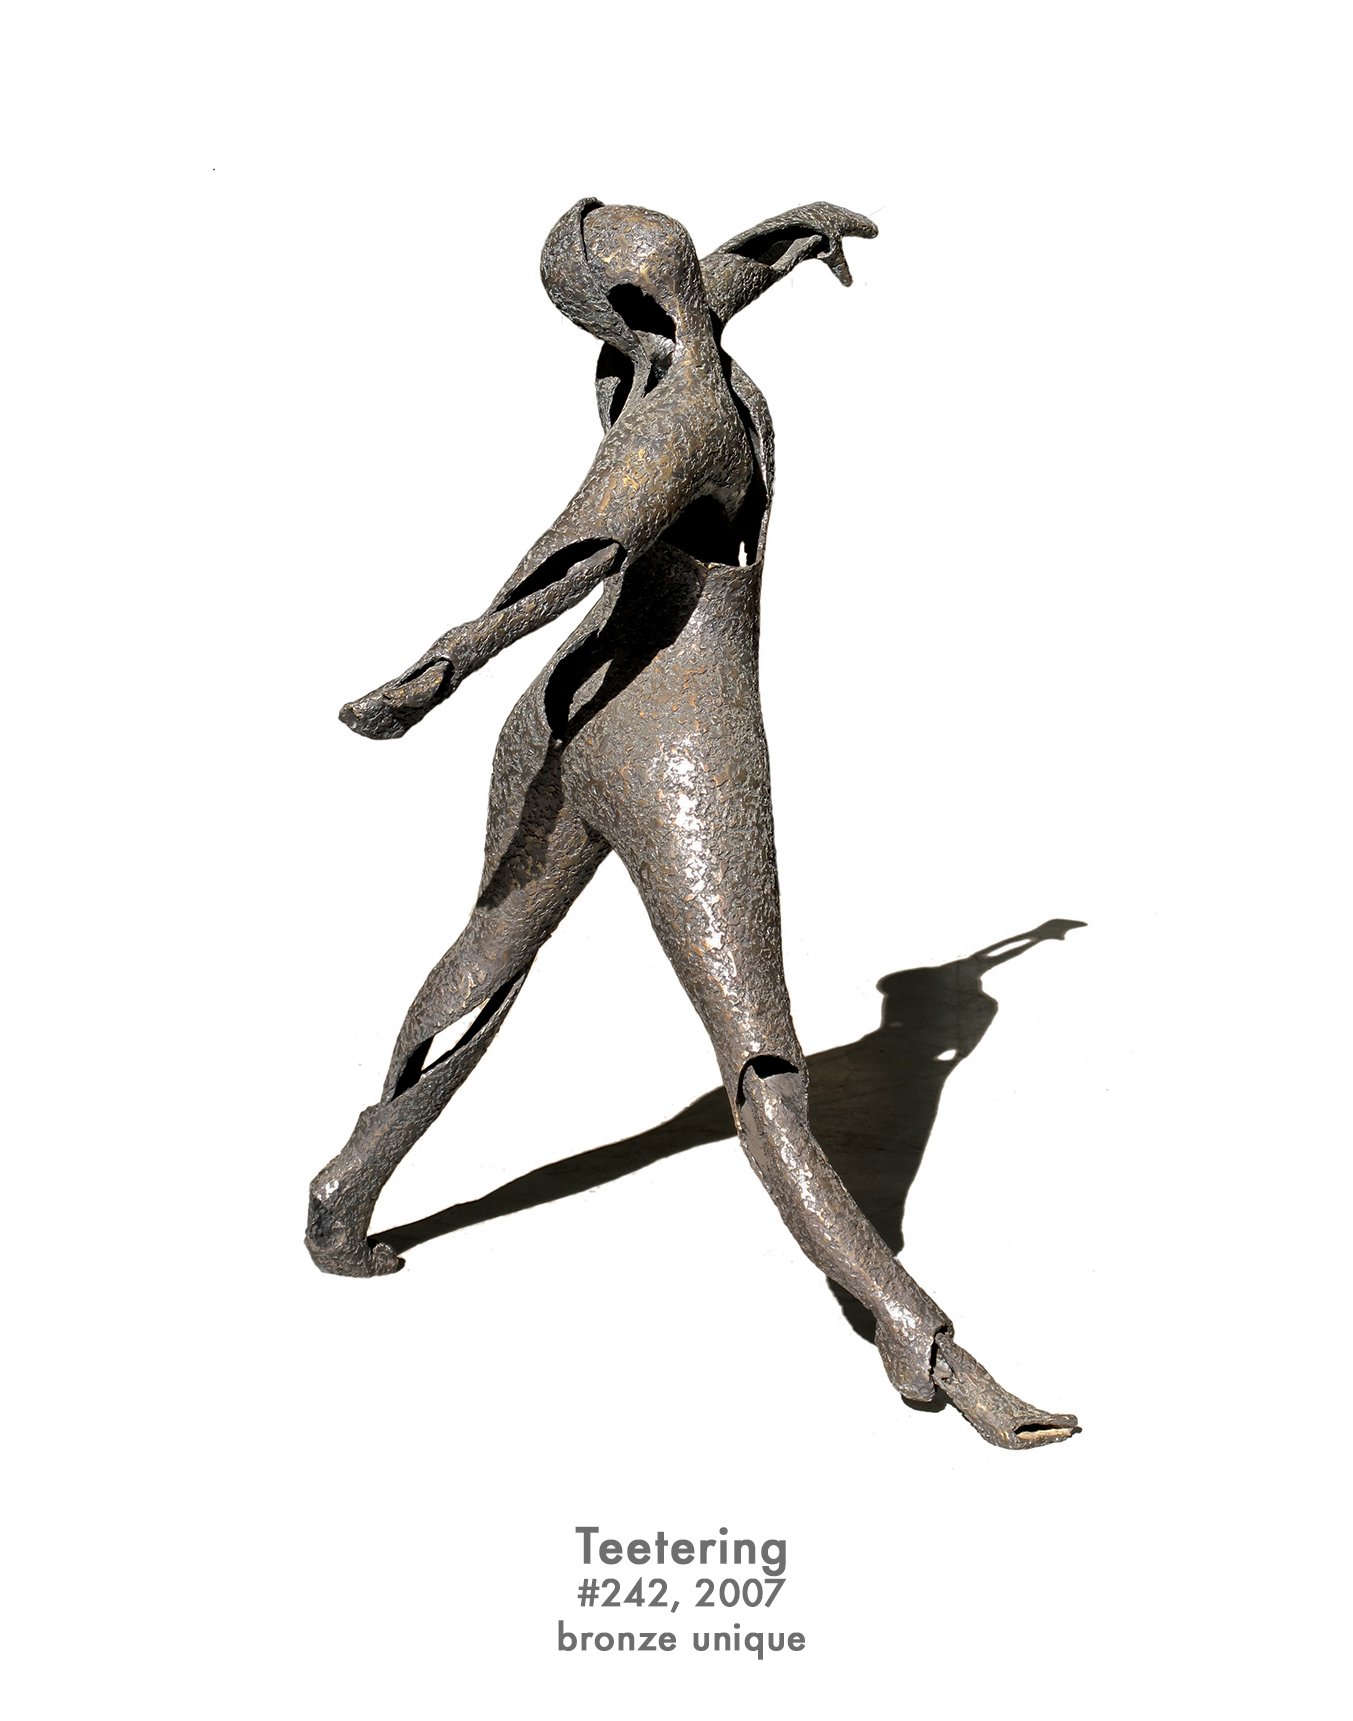 Teetering, 2007, bronze, #242